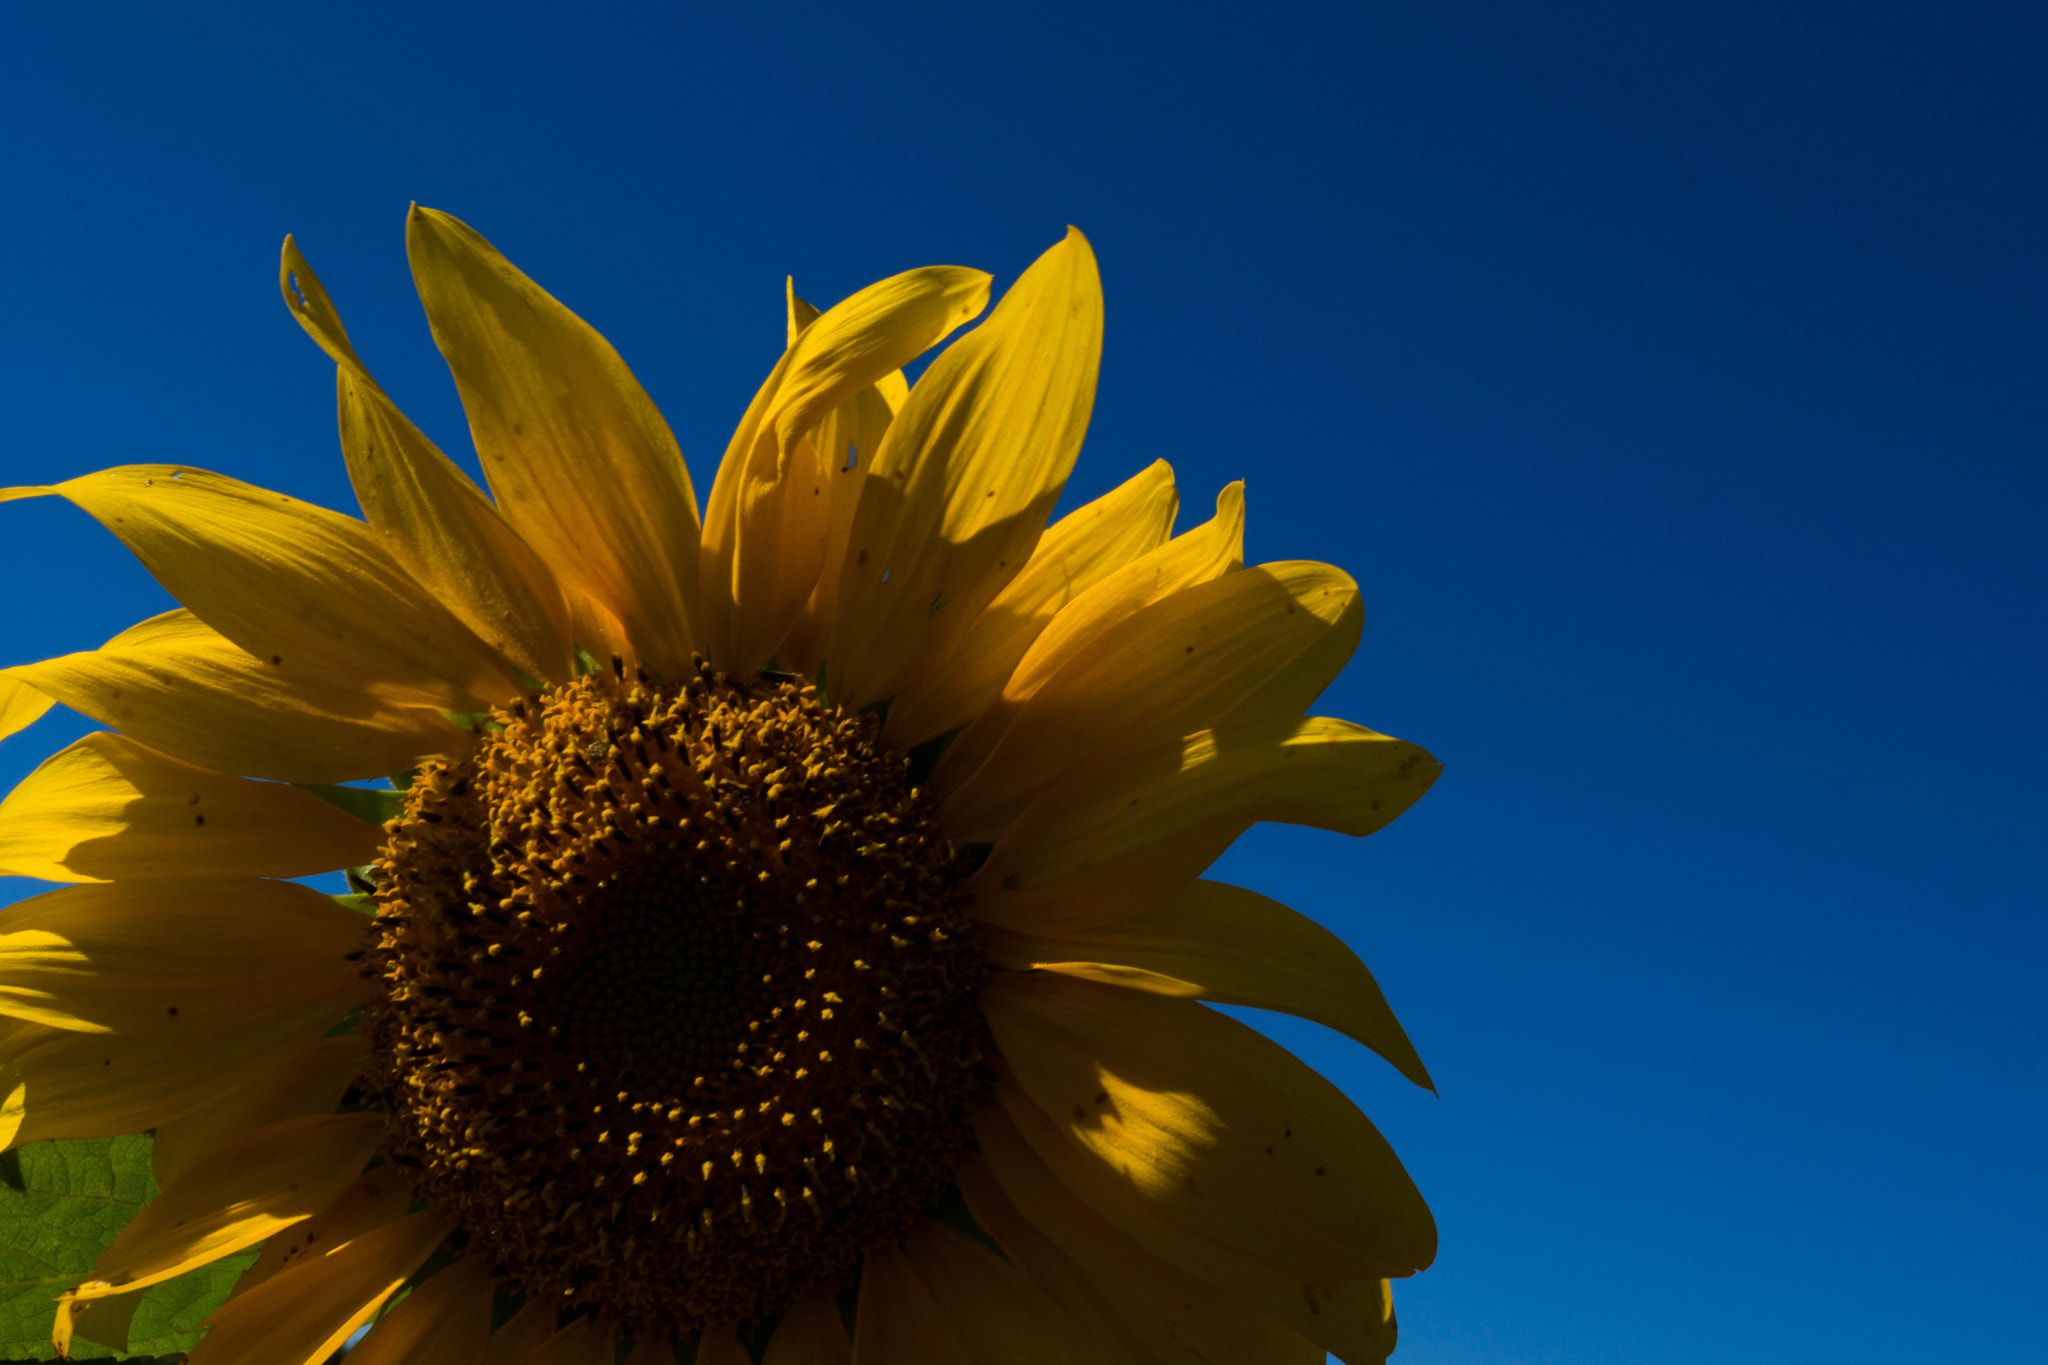 Sony Alpha NEX-7 sample photo. Sun flower photography